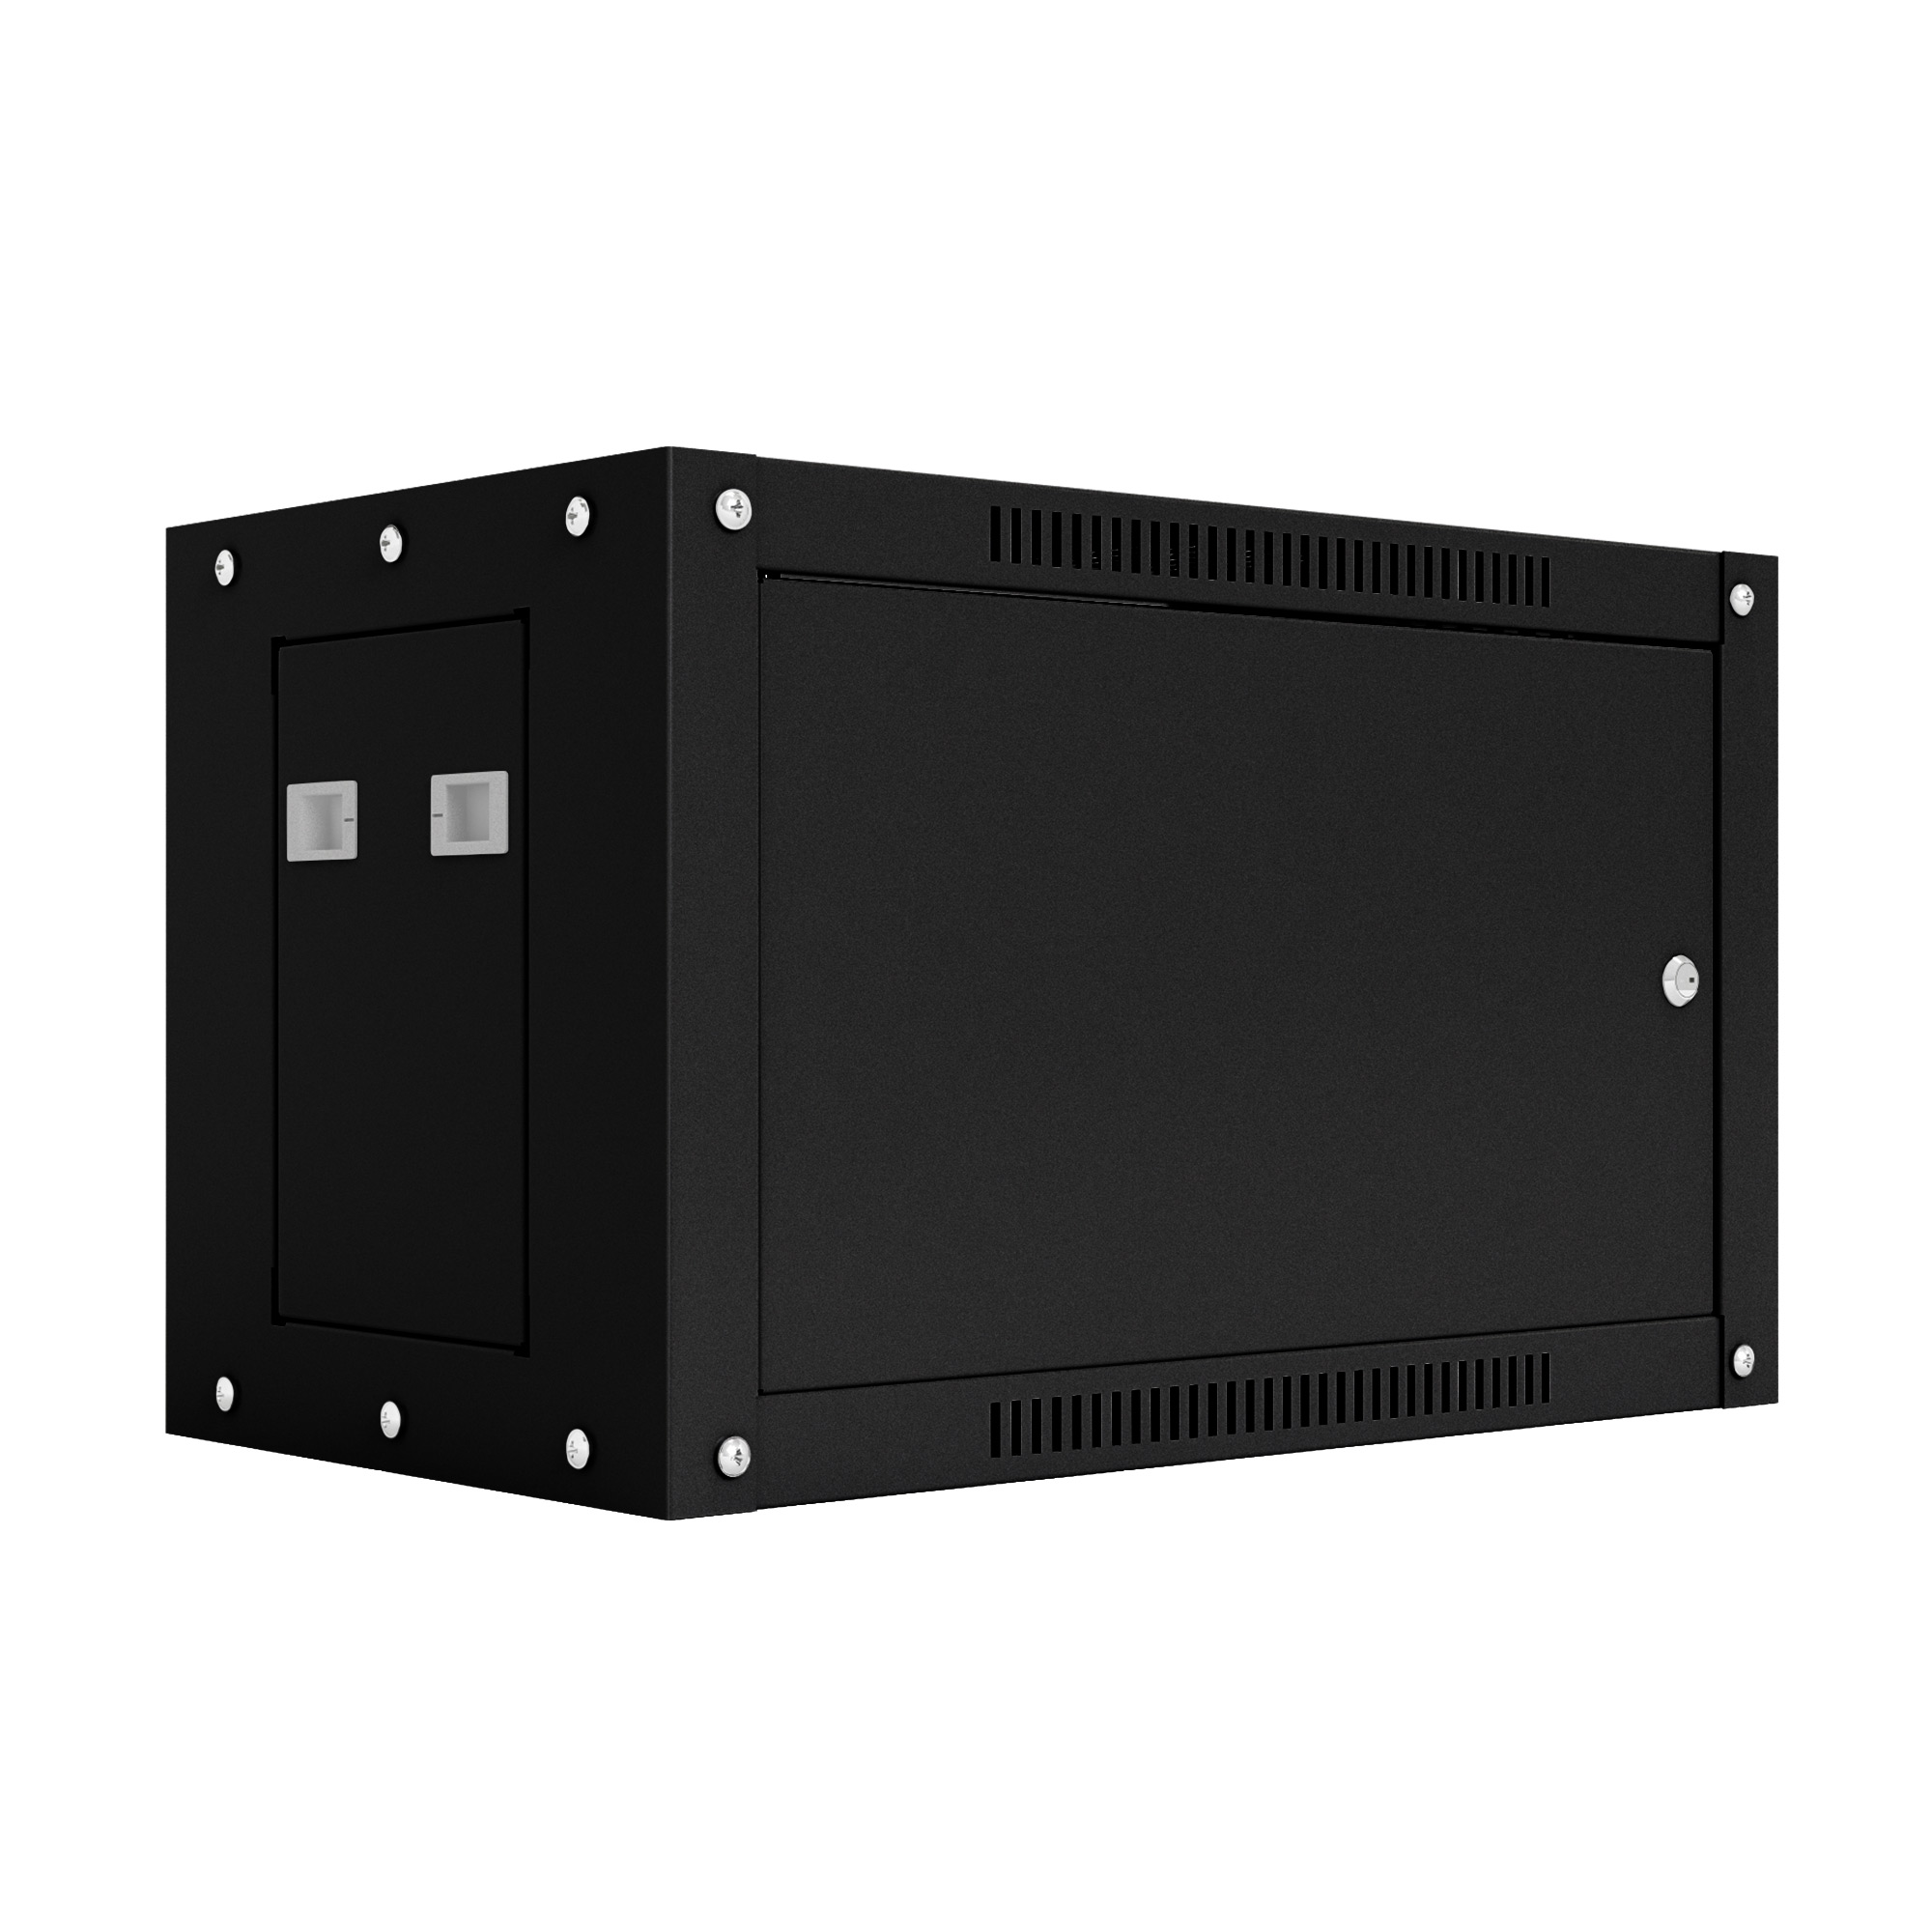 Шкаф настенный телекоммуникационный NTSS WS 15U 600х600х770мм, 2 профиля 19, дверь сплошная металл, боковые стенки съемные, разобранный, черный RAL 9005